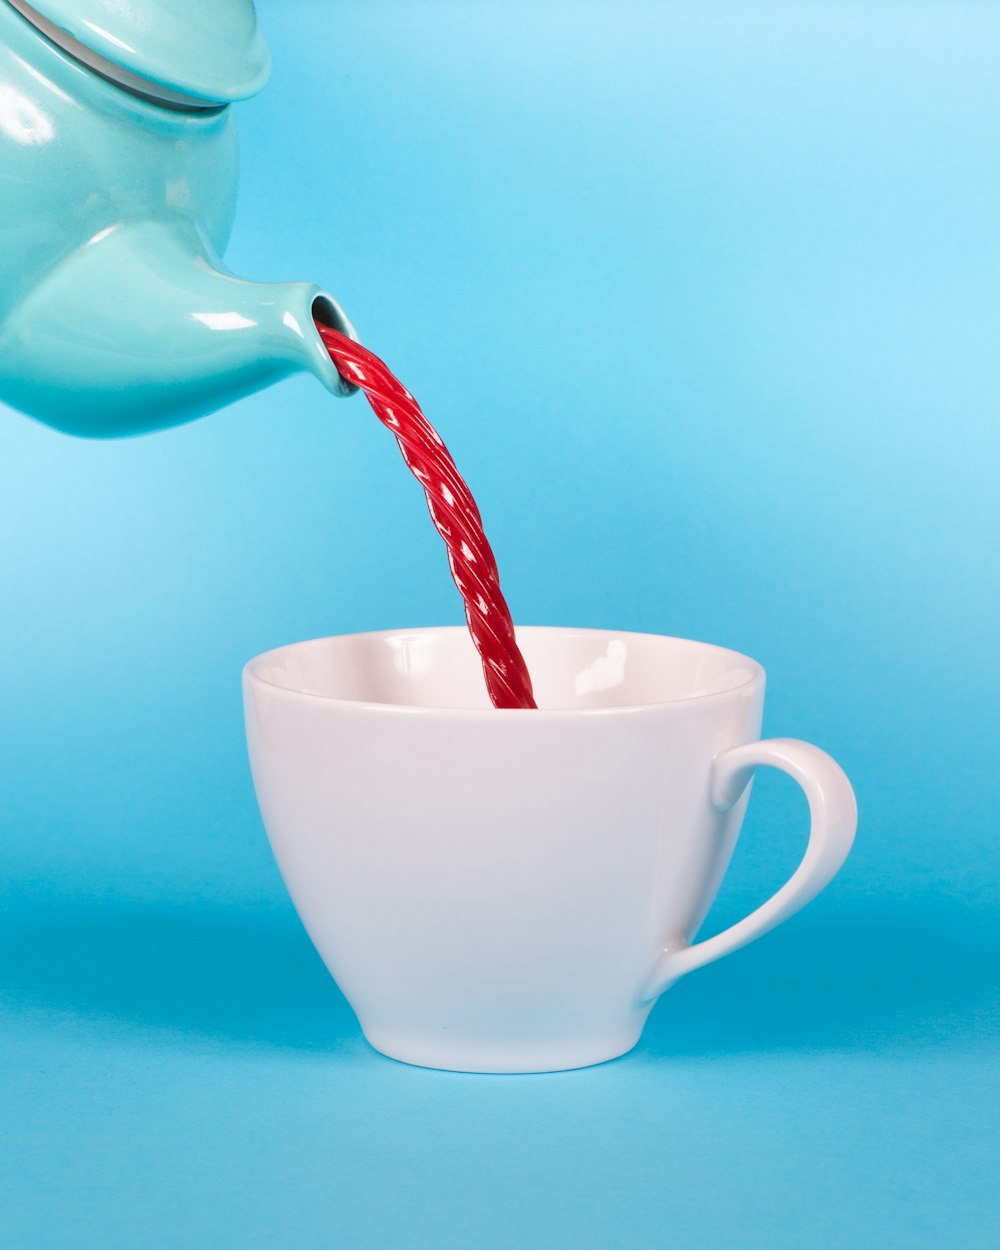 白い茶碗の接写写真に赤い液体を注ぐ緑のティーポット